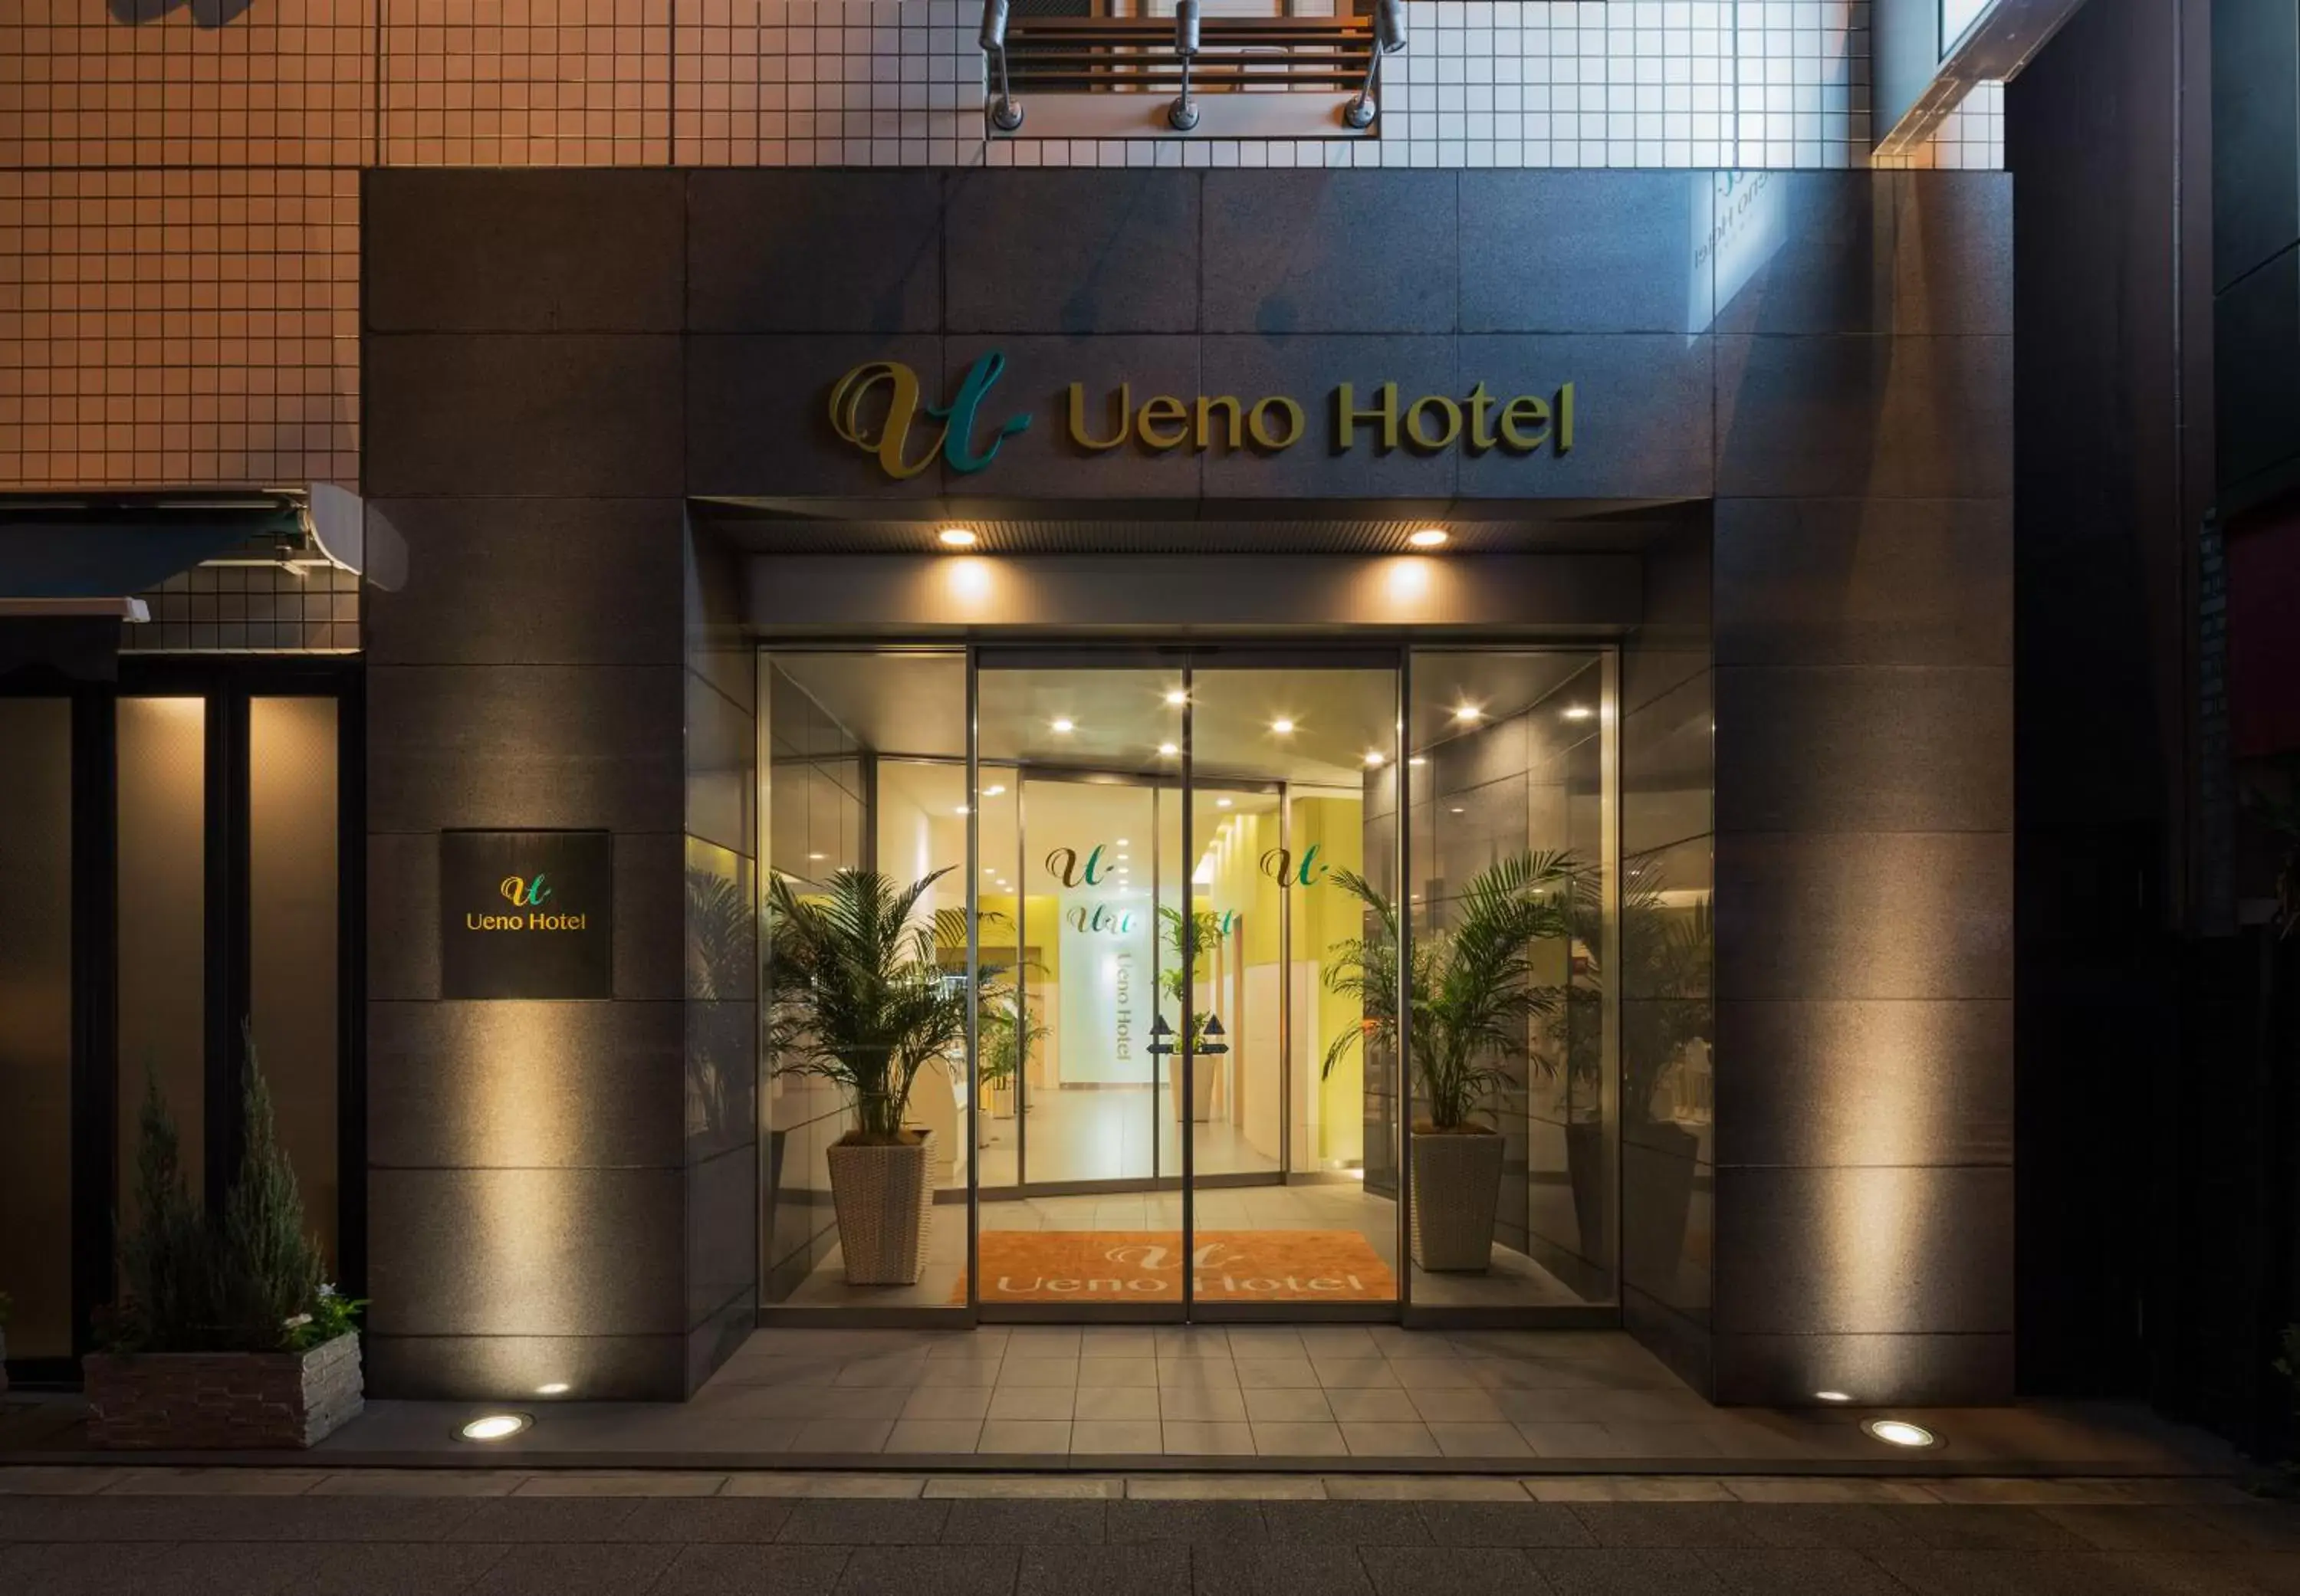 Facade/entrance in Ueno Hotel